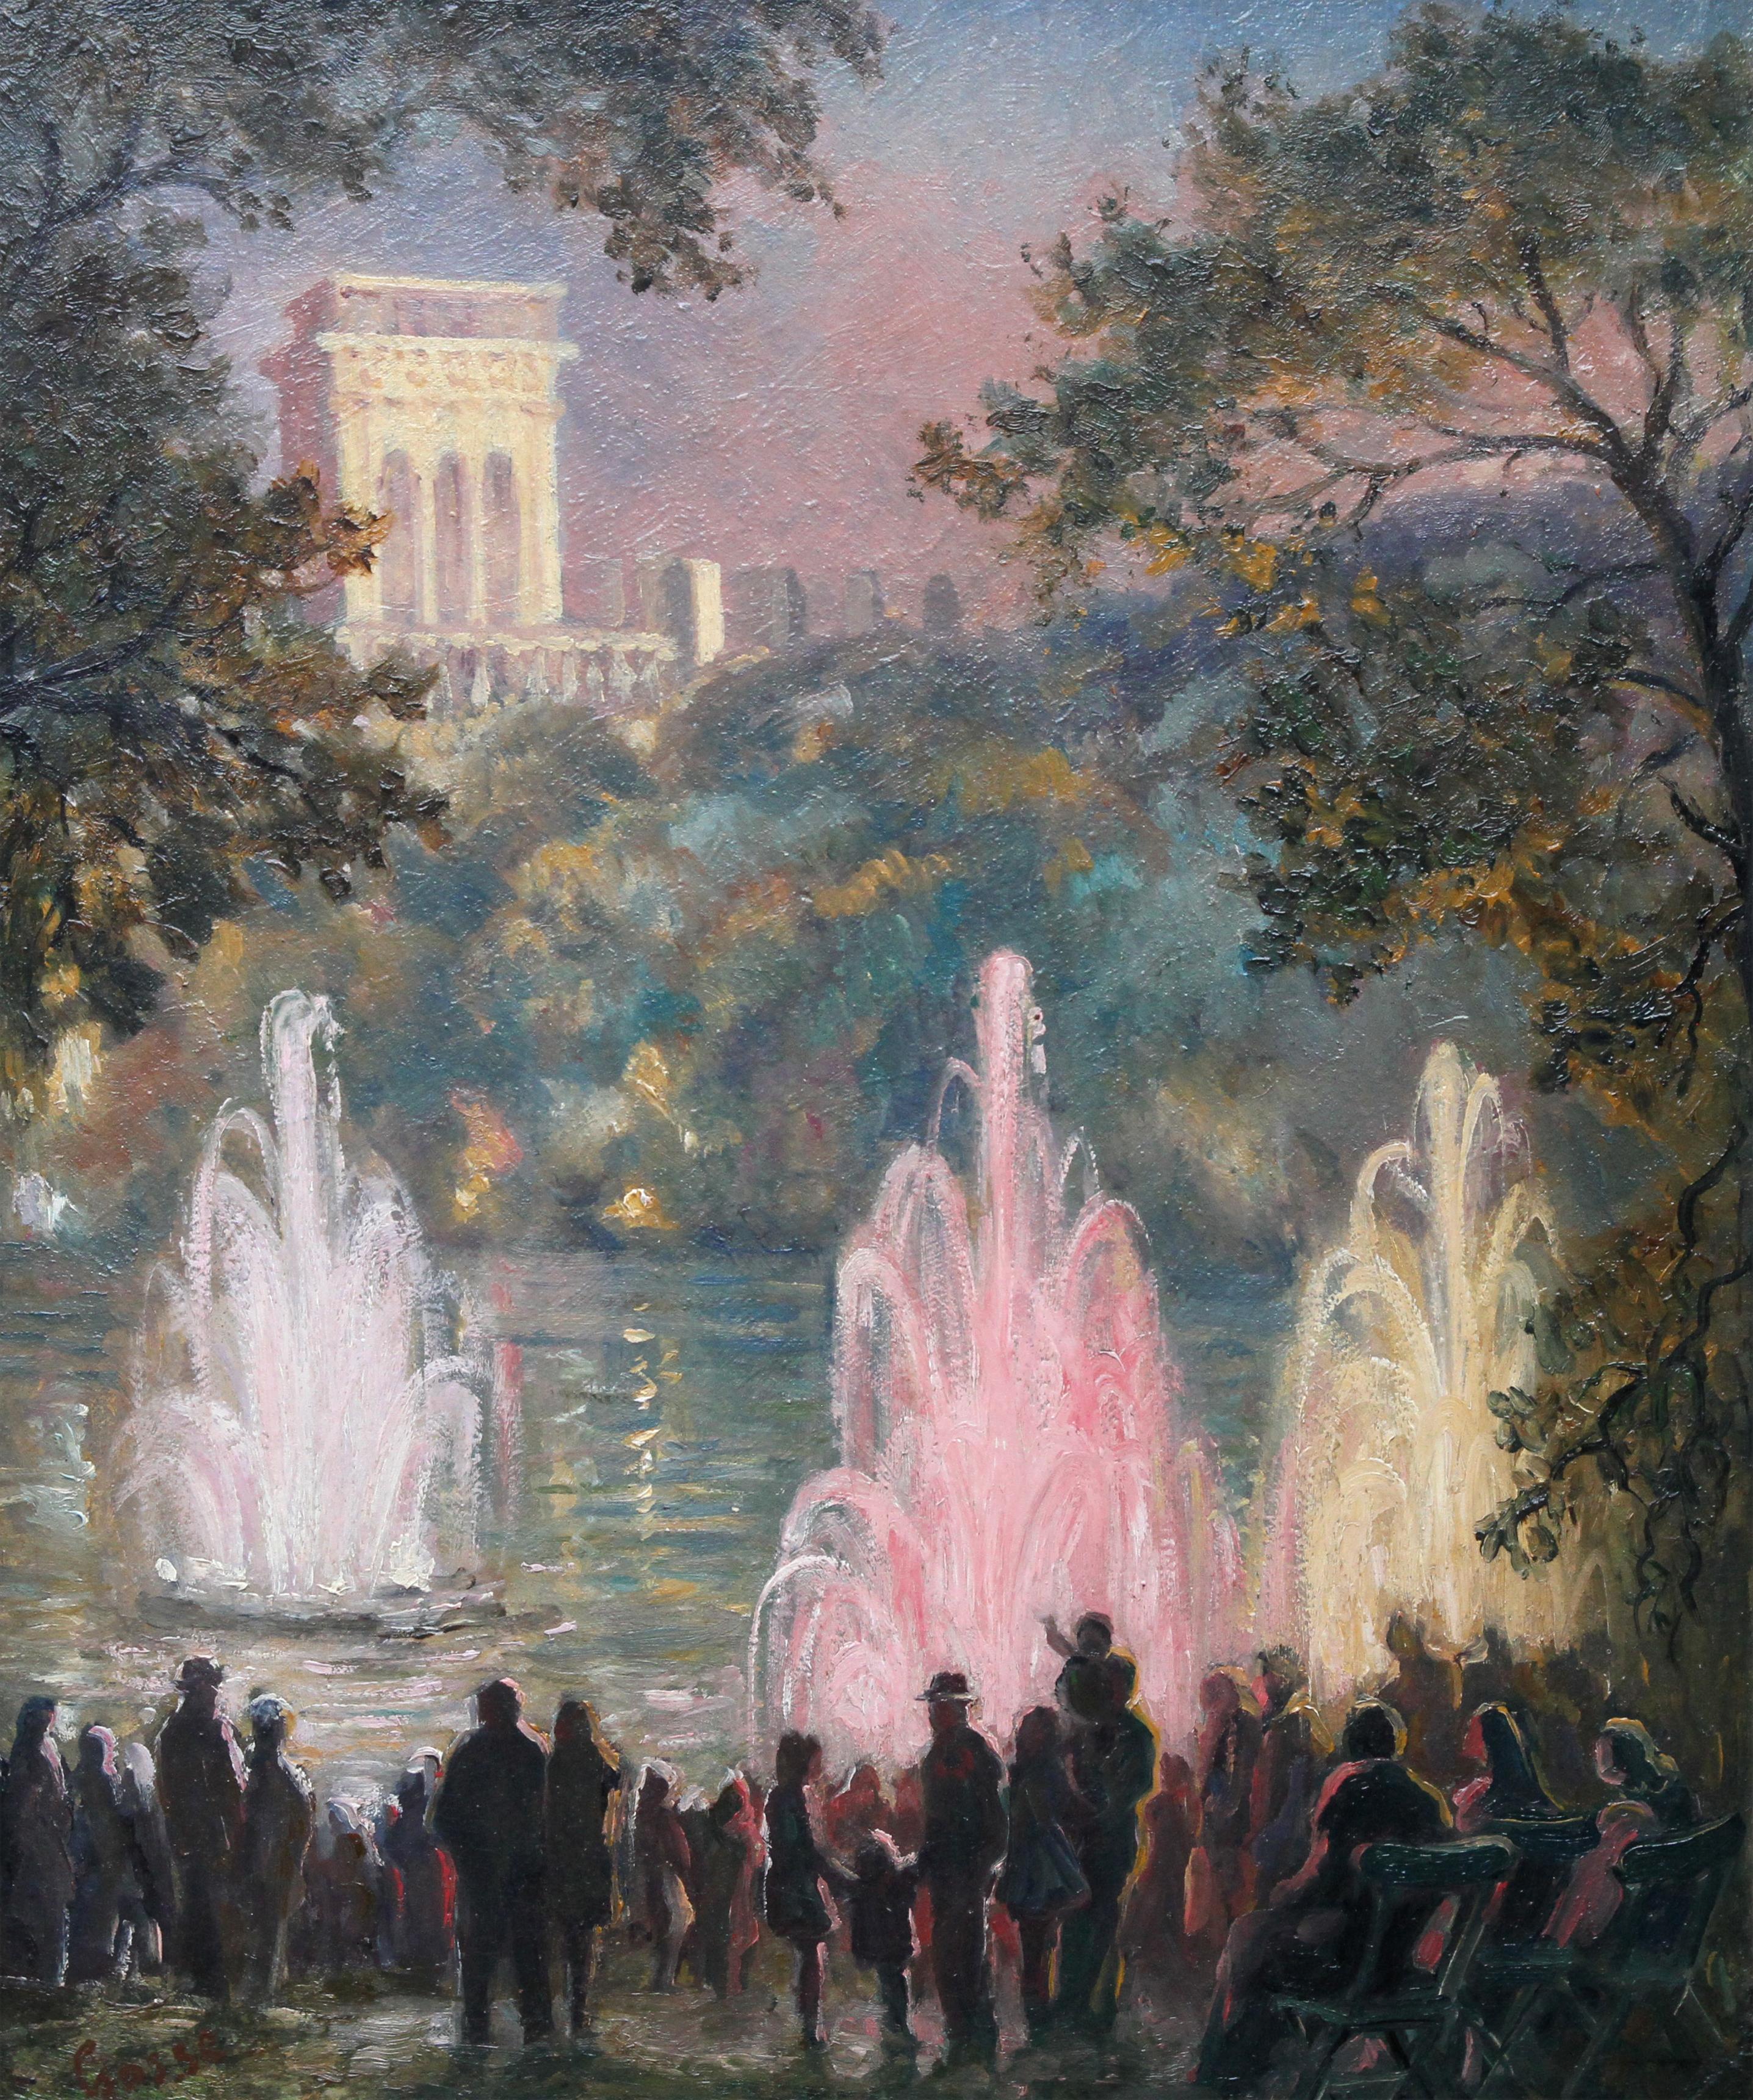 Brunnen in Pernes Les Fountaines, Frankreich, impressionistisches Landschaftsgemälde  – Painting von Sylvia Gosse